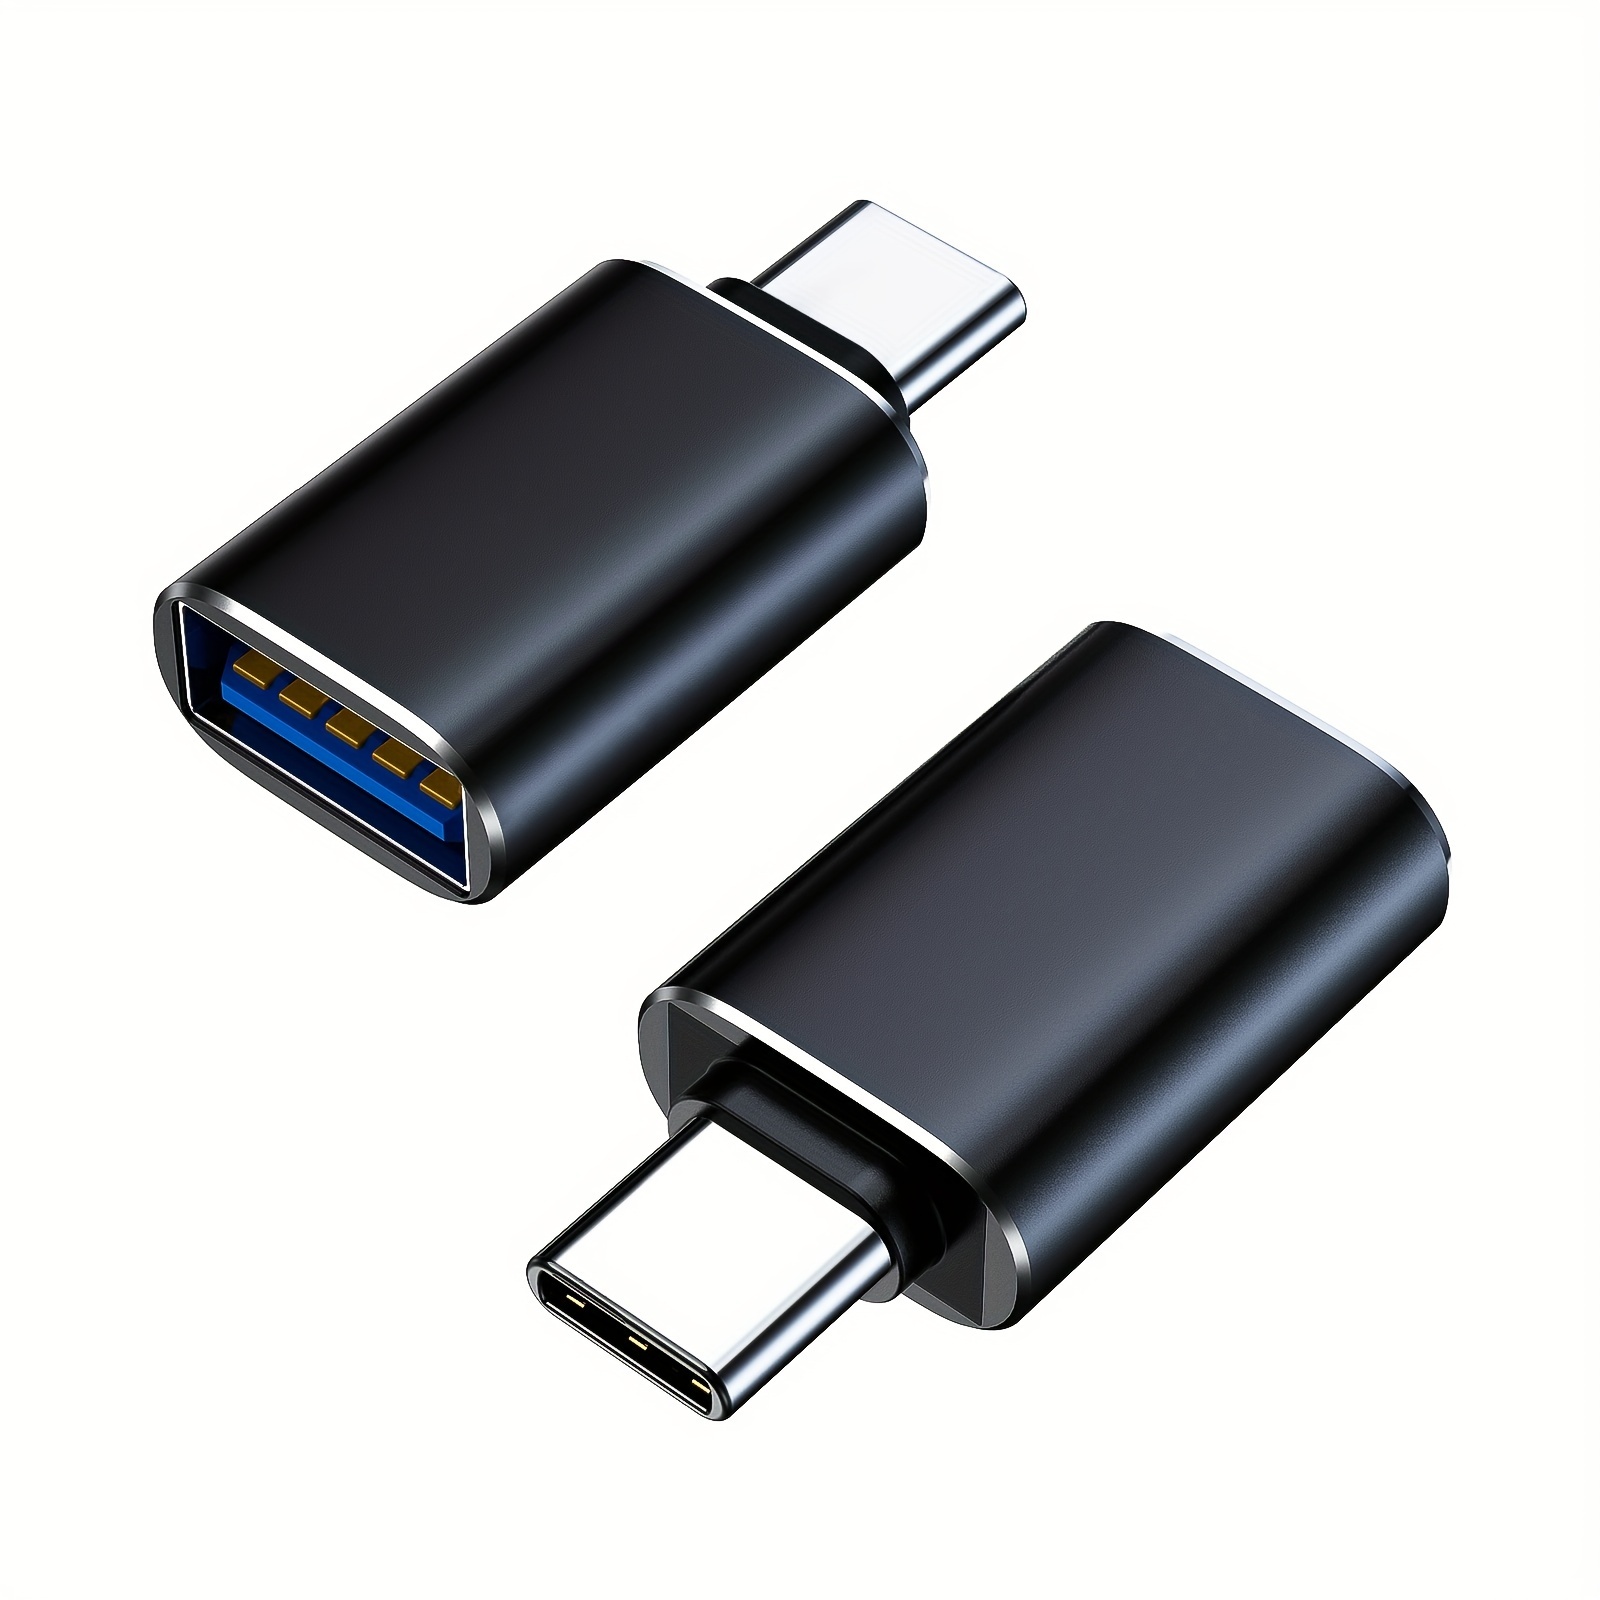 Câble USB OTG Samsung Galaxy Tab - 1 m - Adaptateurs USB (USB 2.0)